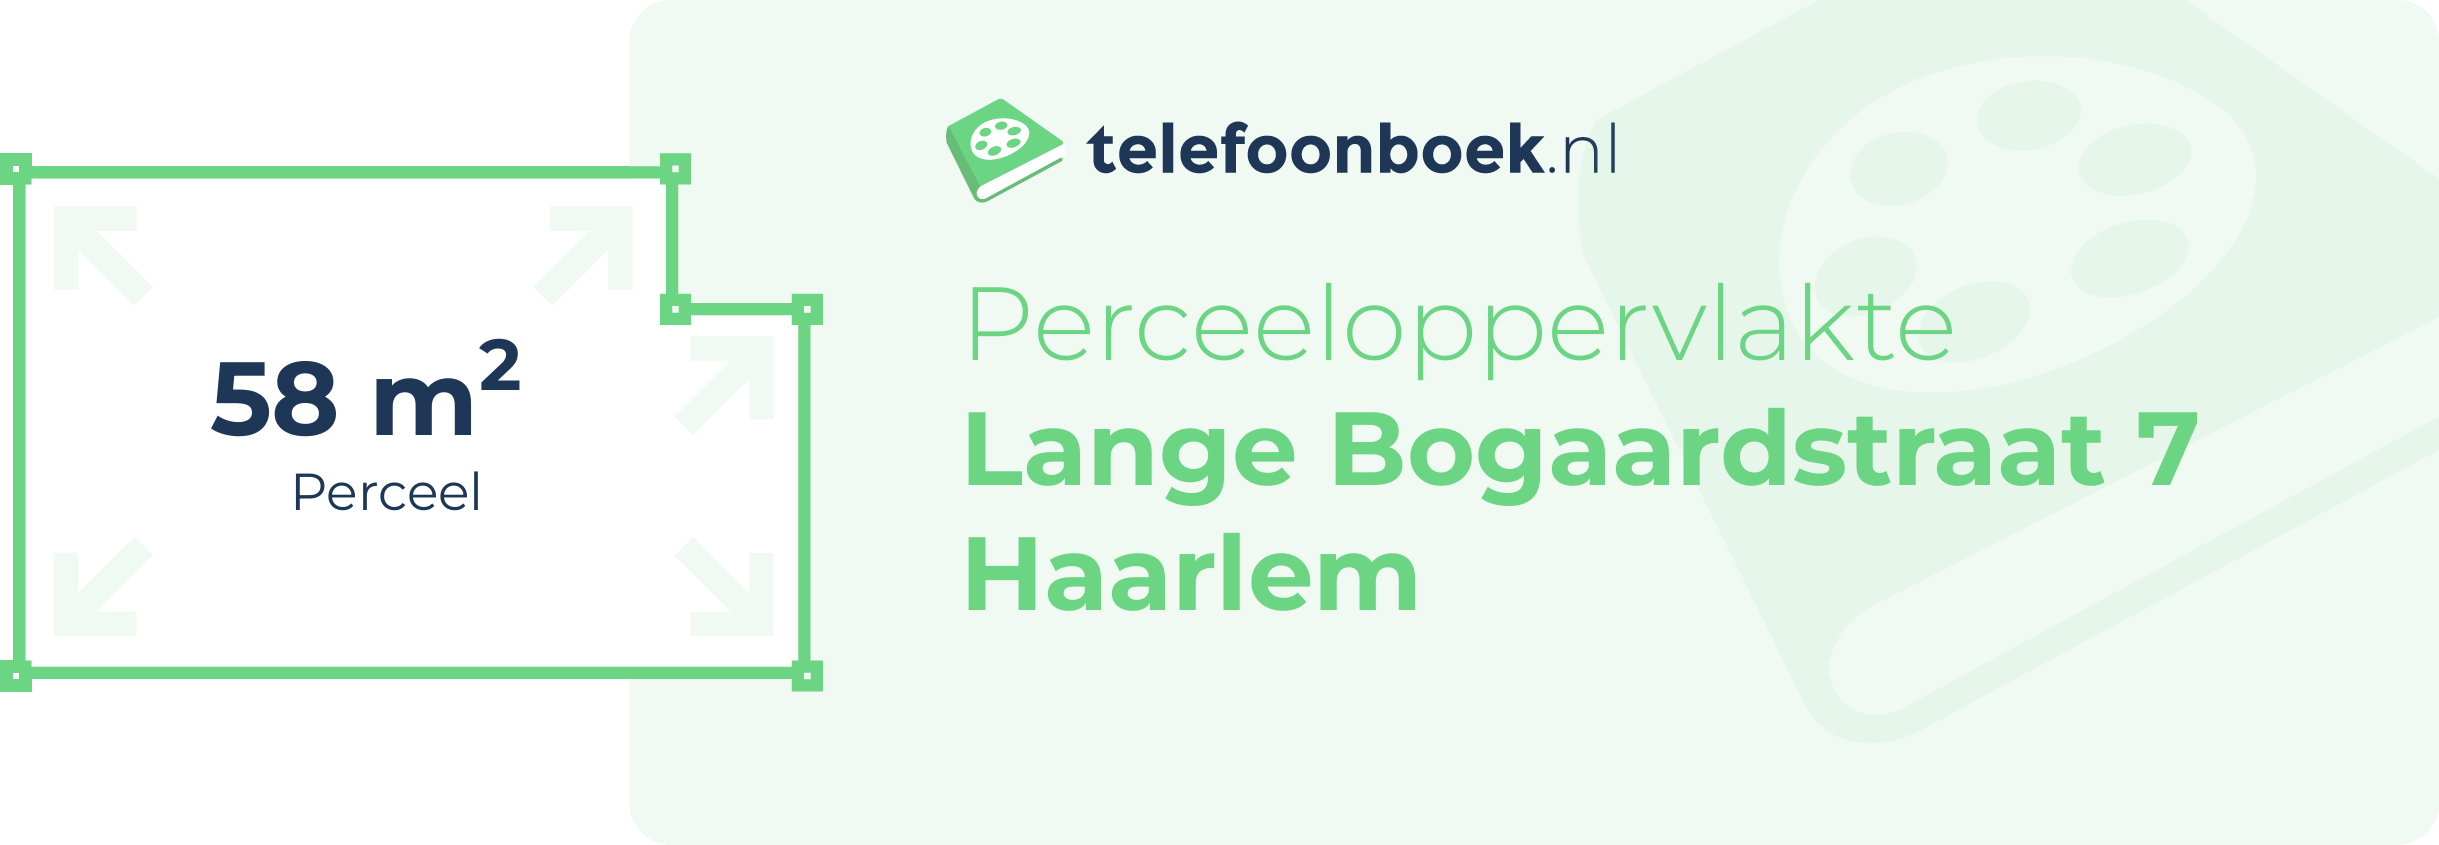 Perceeloppervlakte Lange Bogaardstraat 7 Haarlem